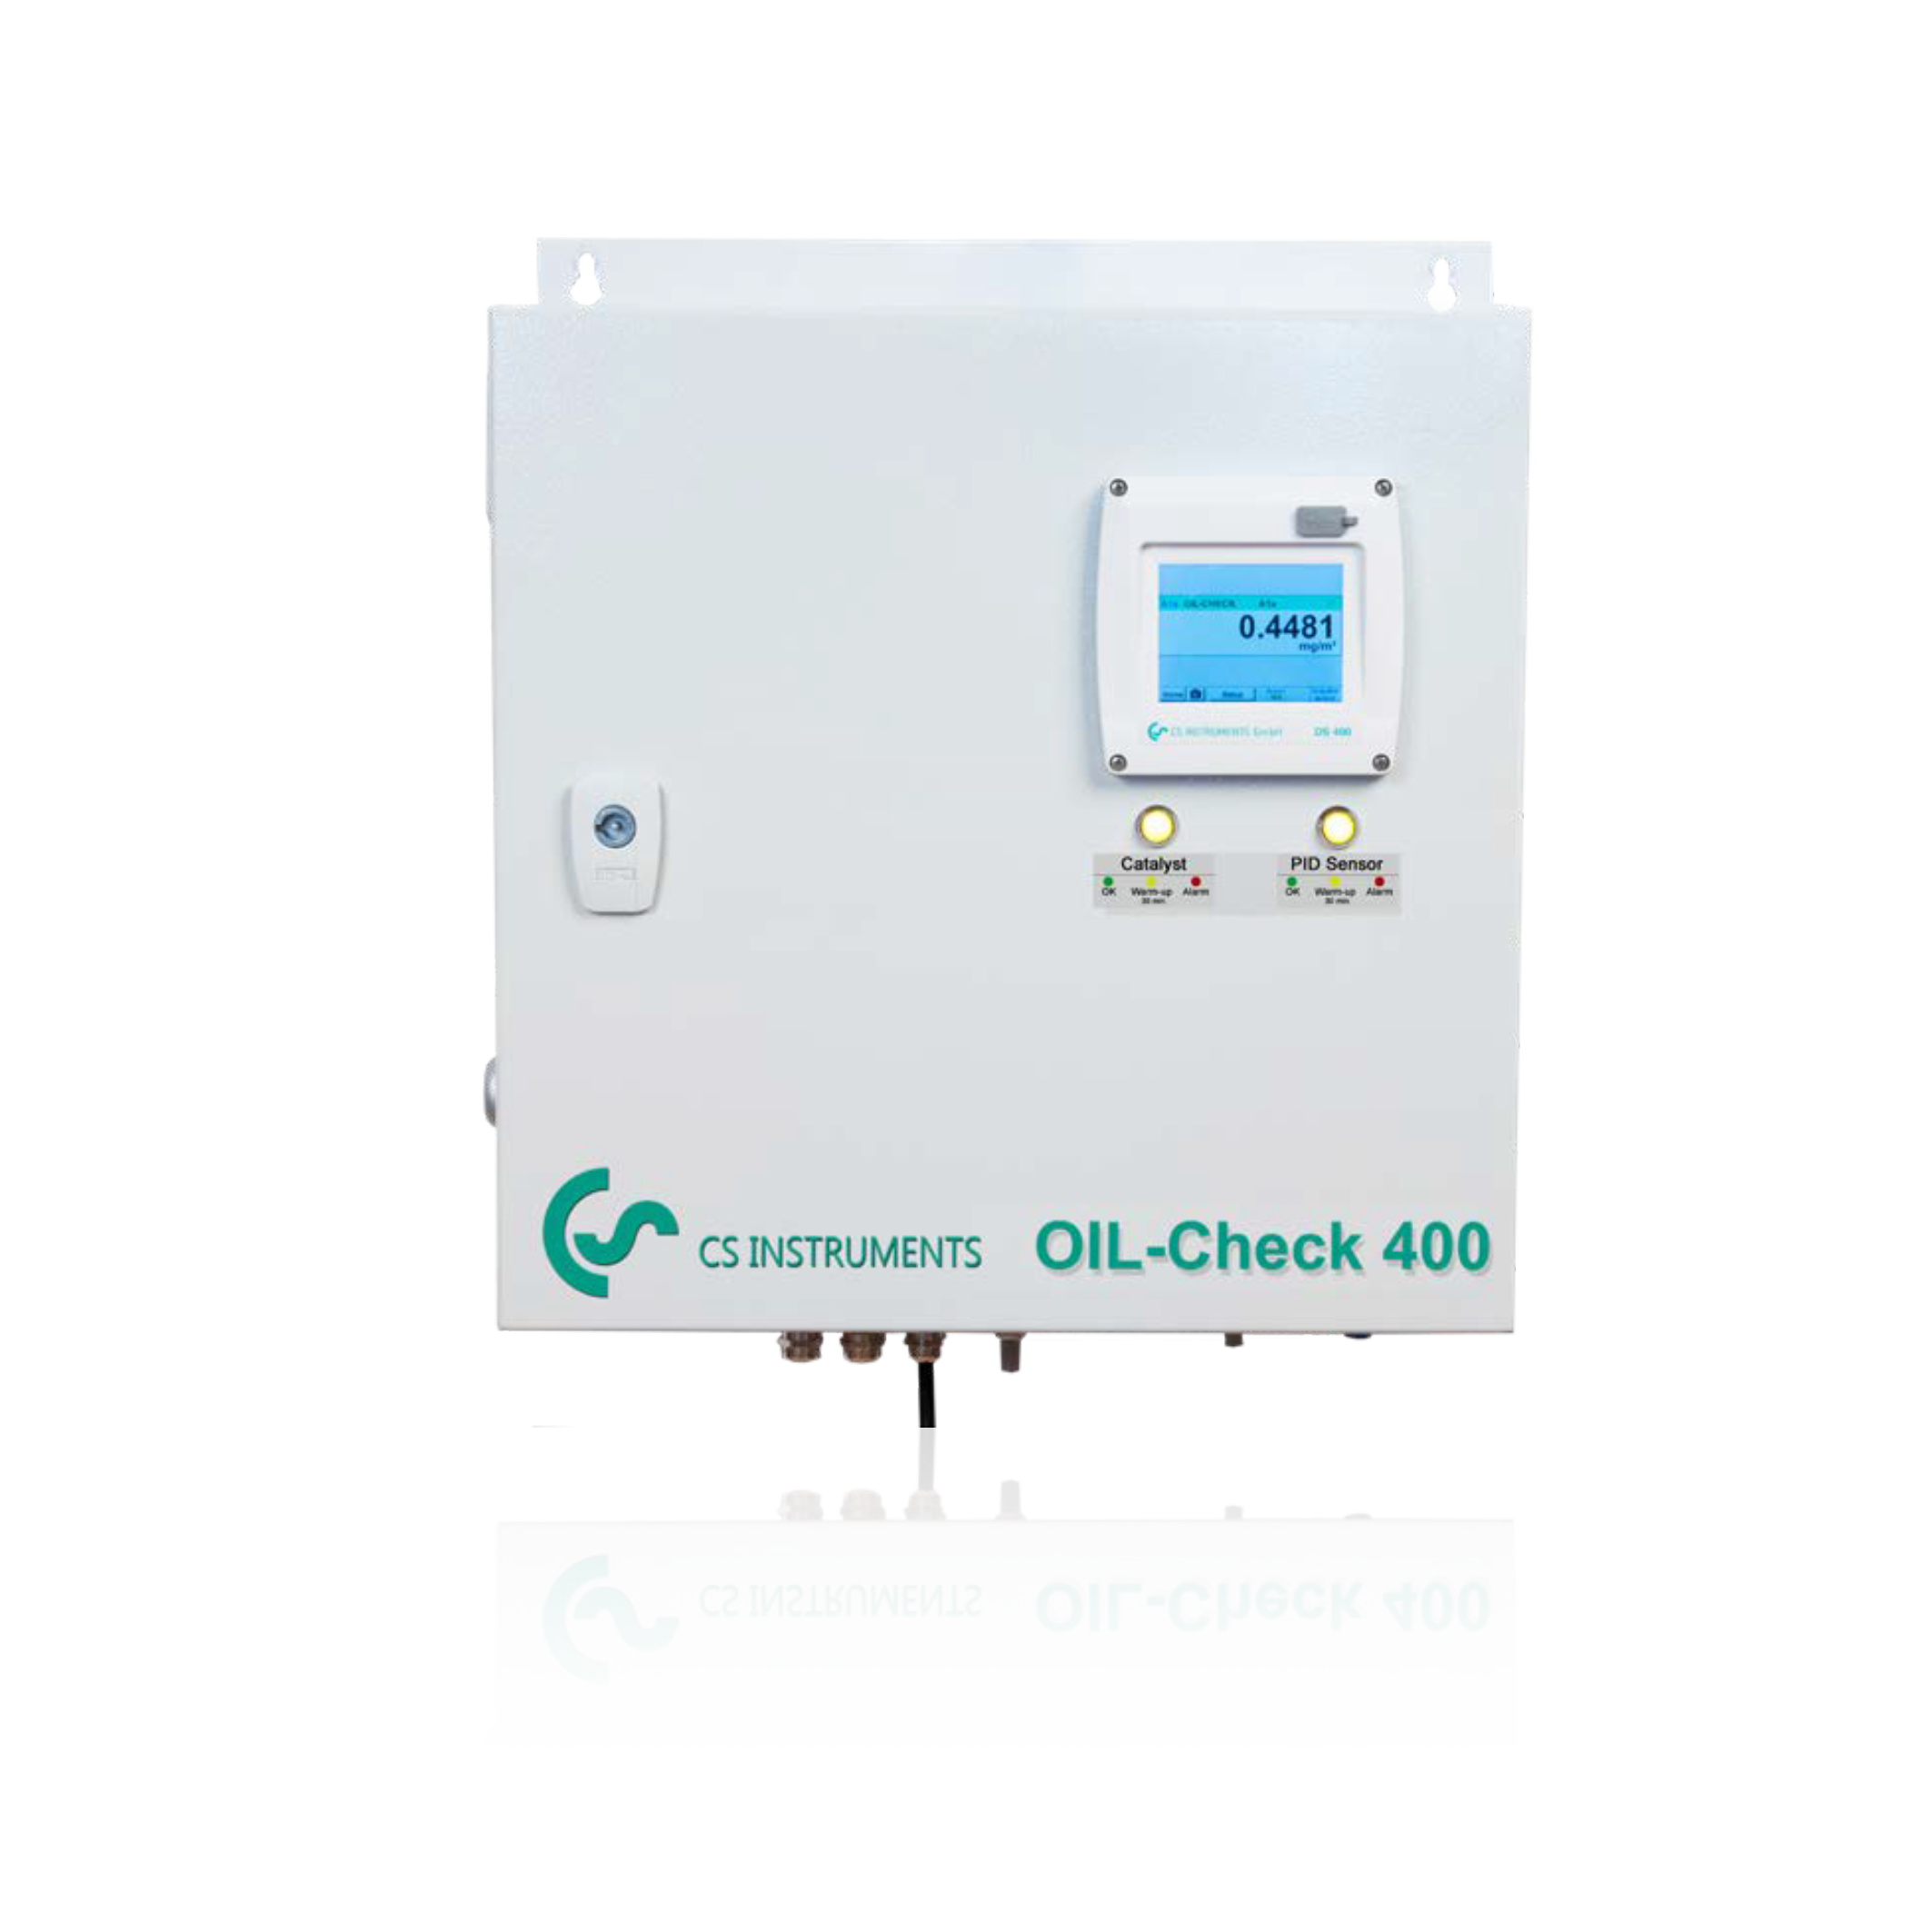 德国CS用于持续高精度检测压缩空气内气态残油含量的监测系统